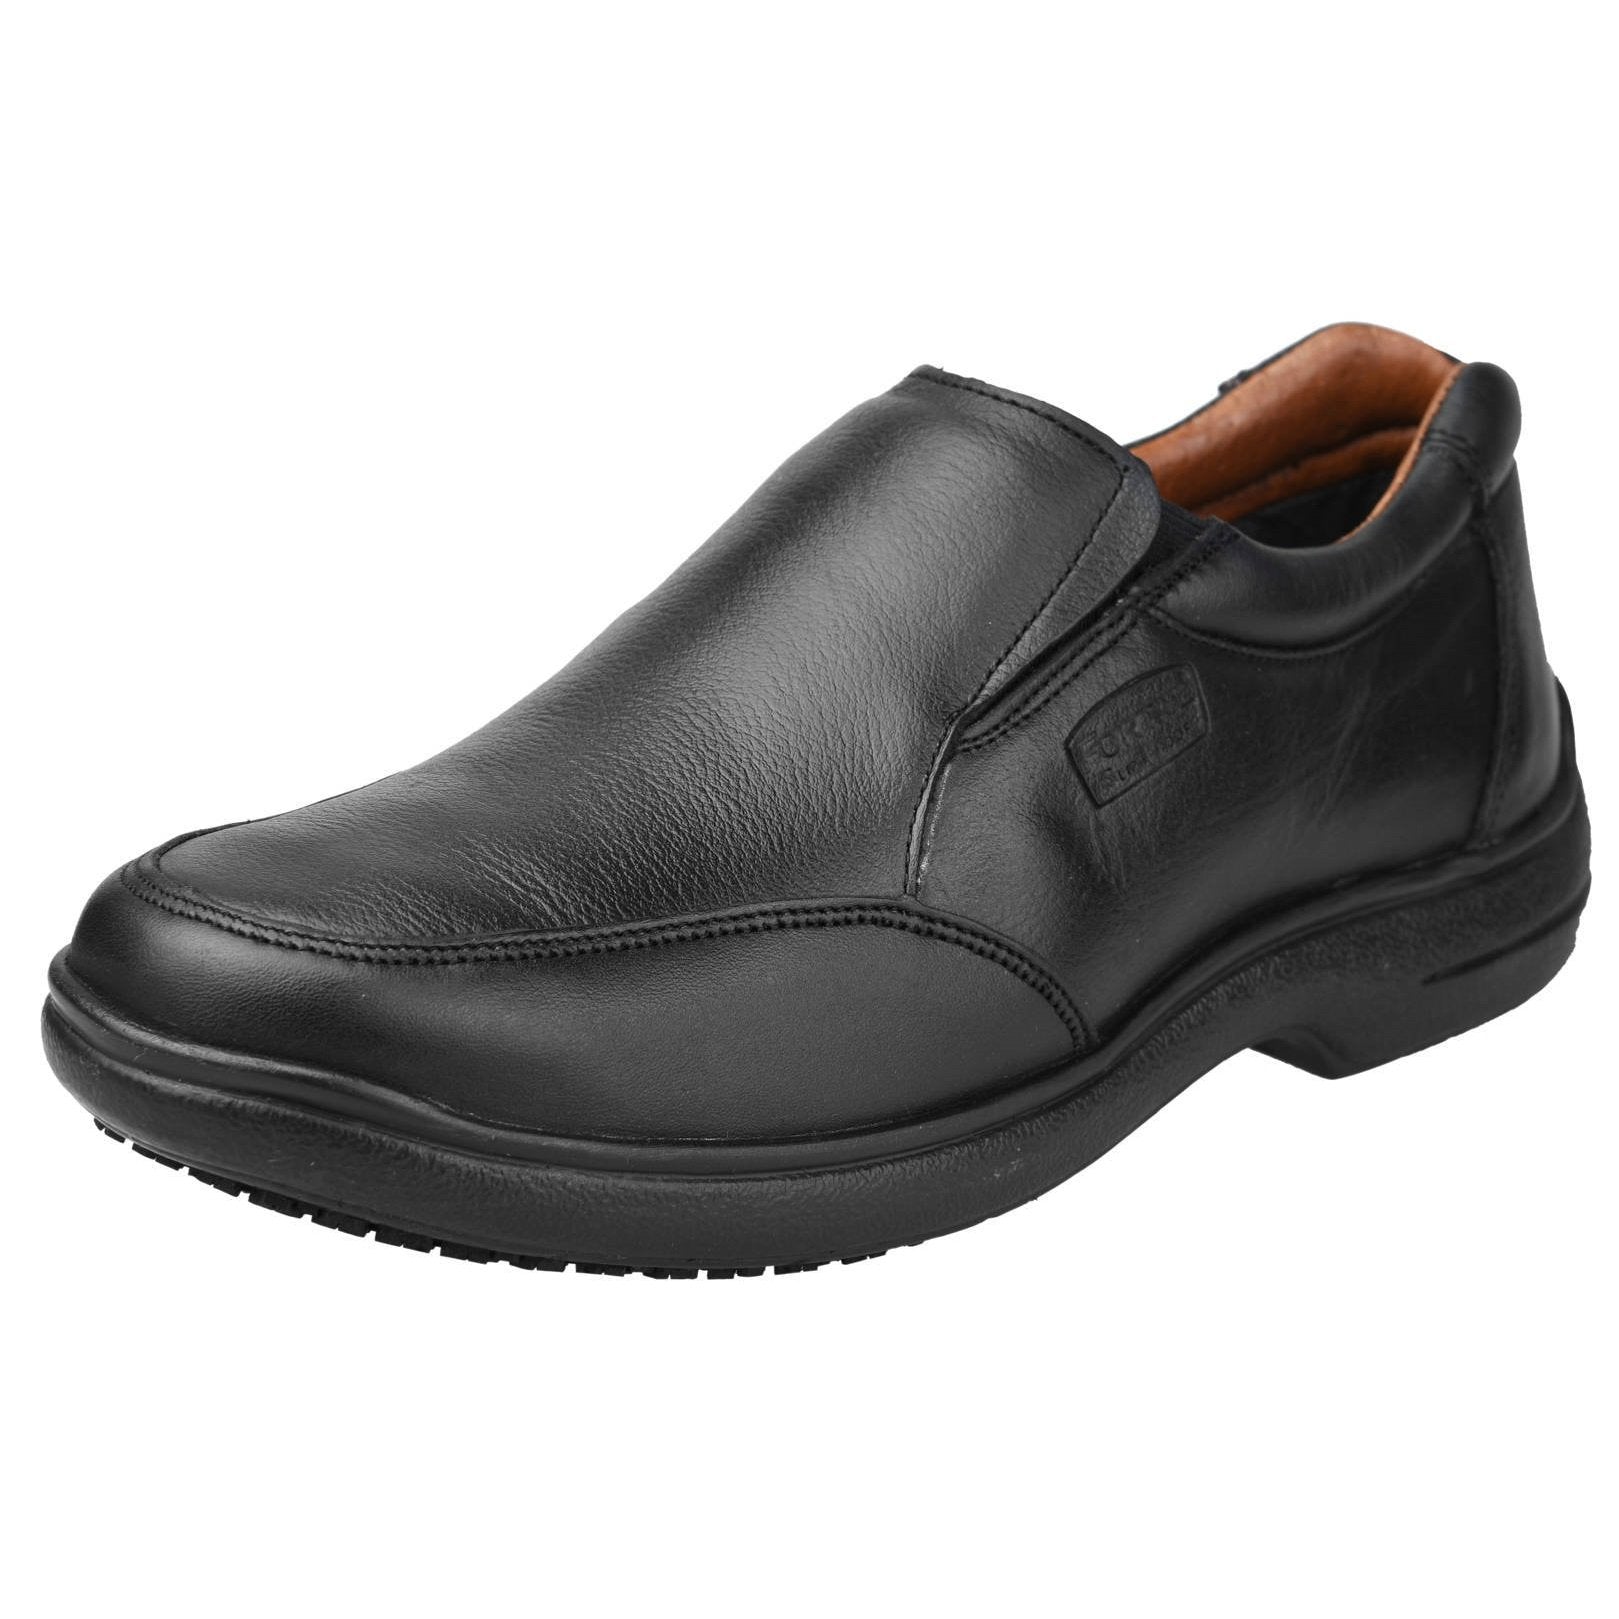 Zapatos antideslizantes para hombre: zapatos de trabajo para hombre